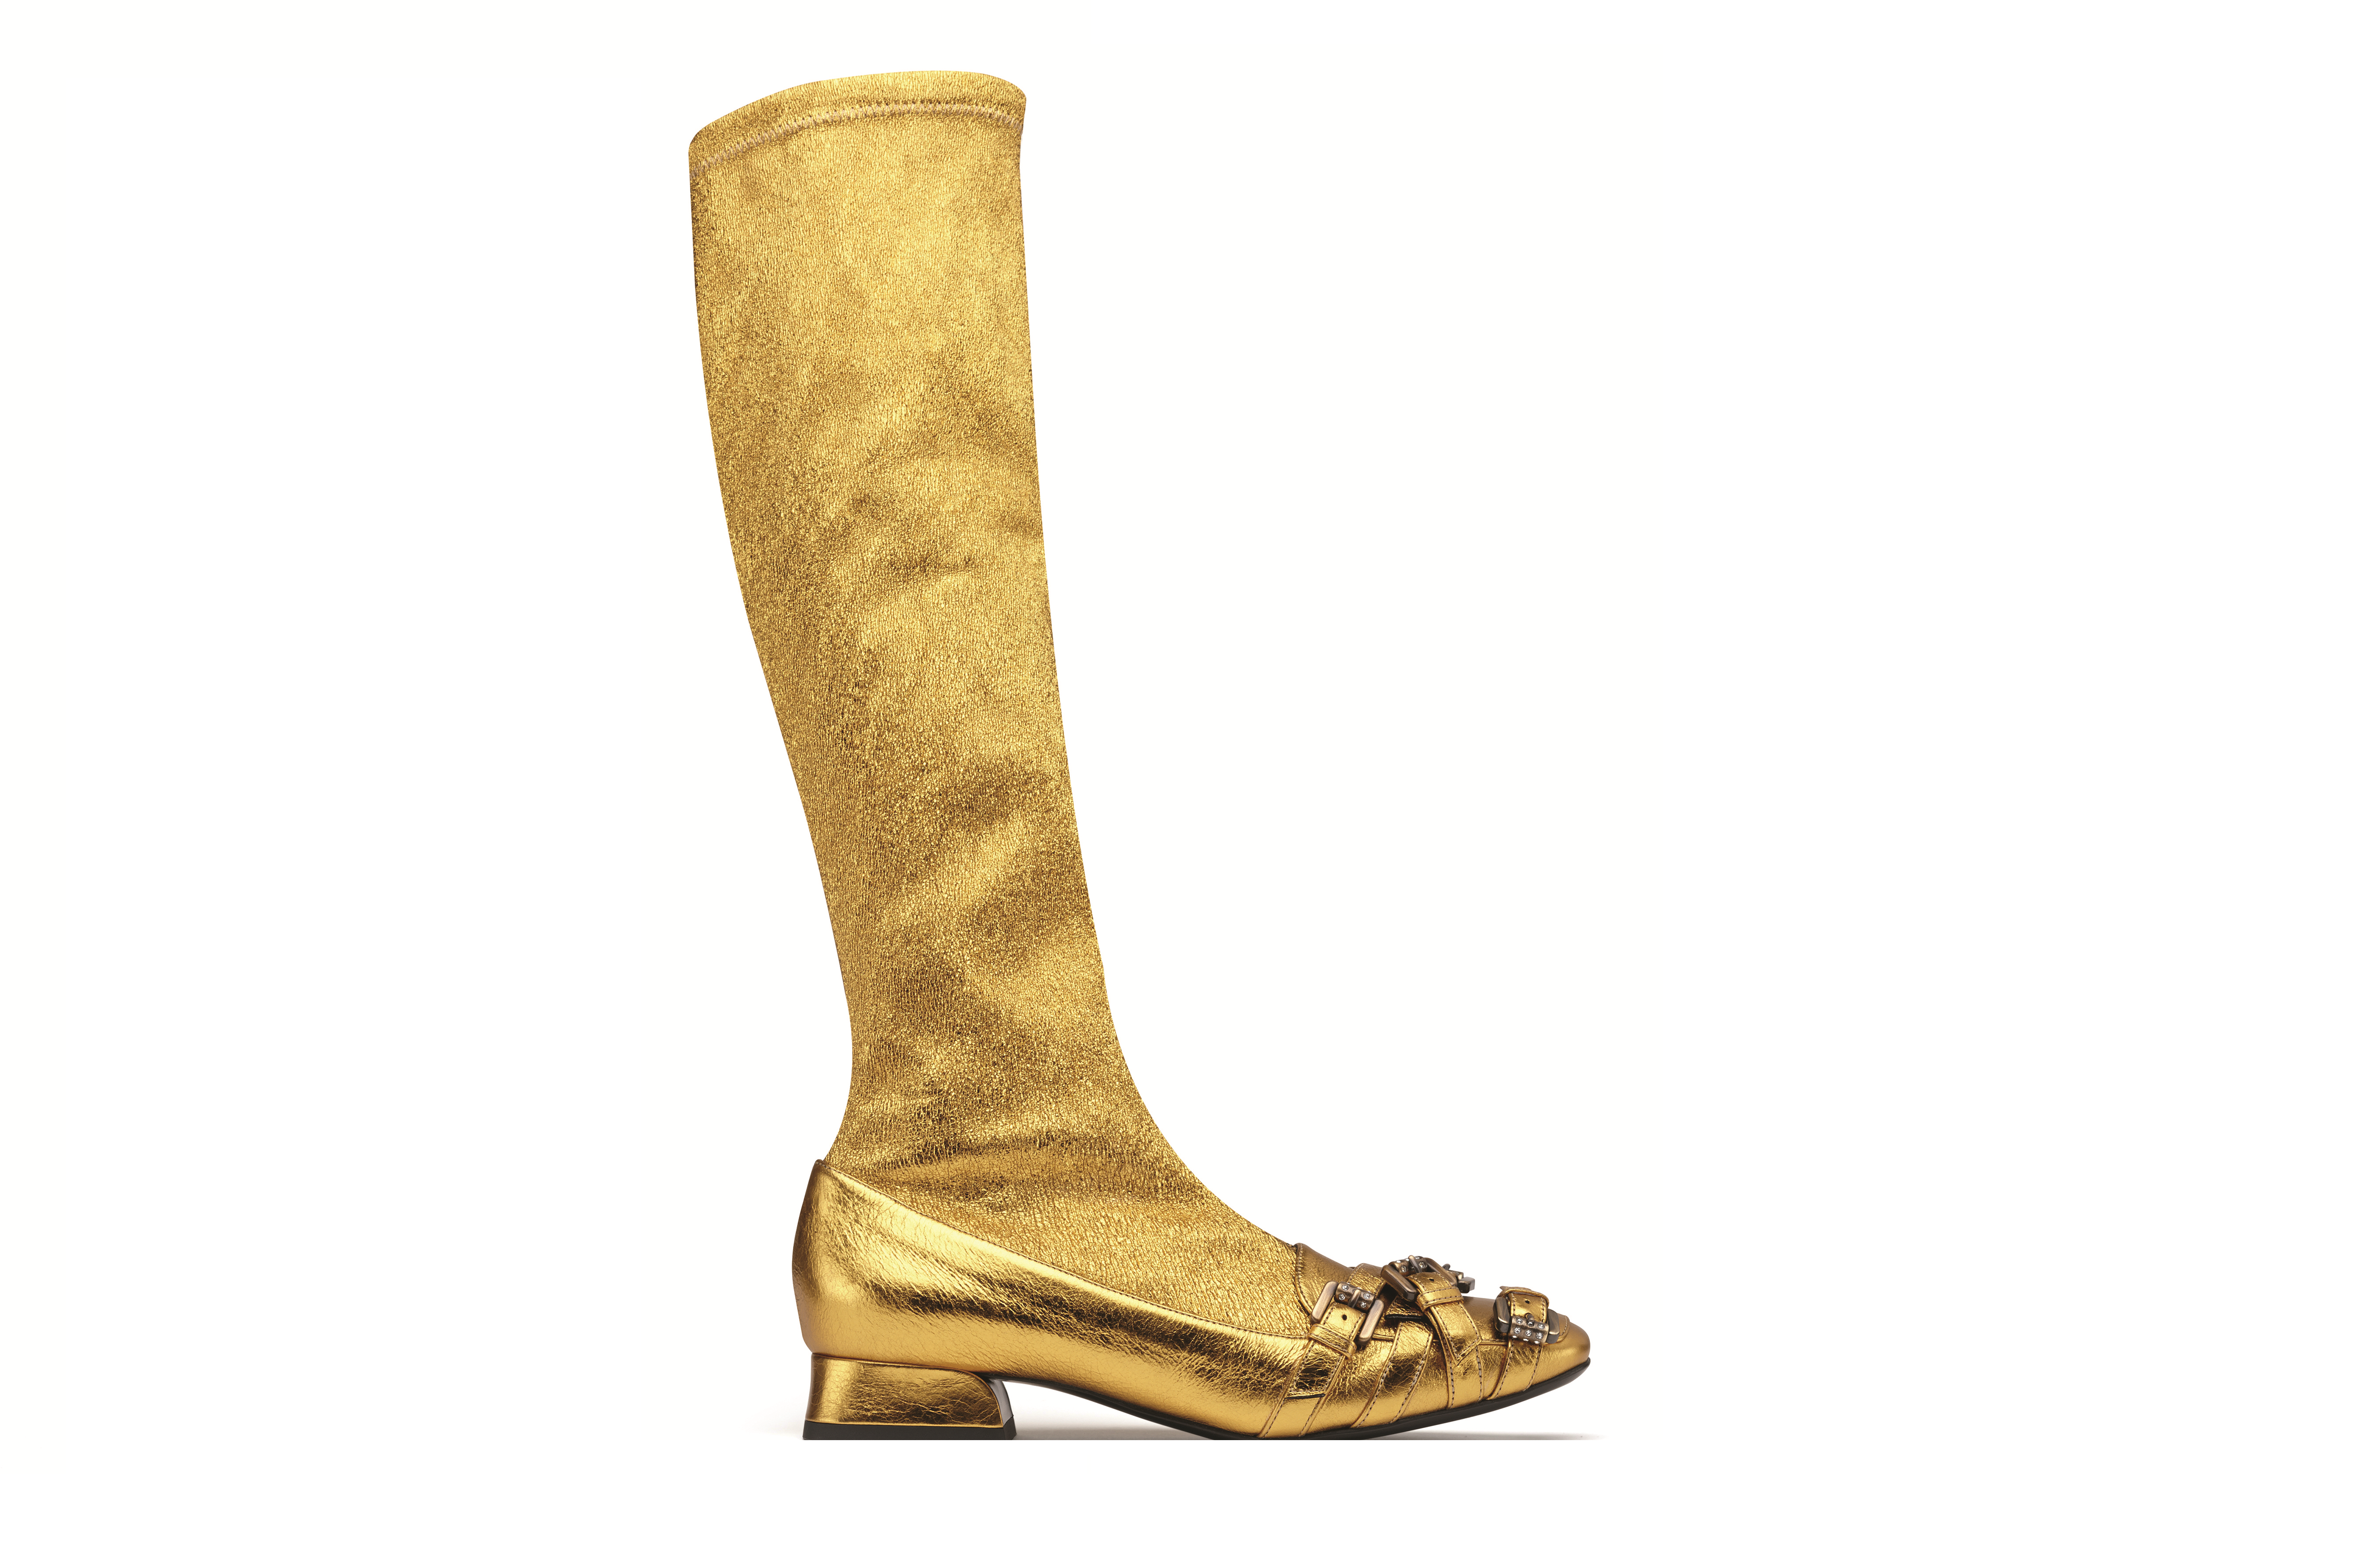 Stivali in nappa color oro antique di Bottega Veneta (foto Bottega Veneta)